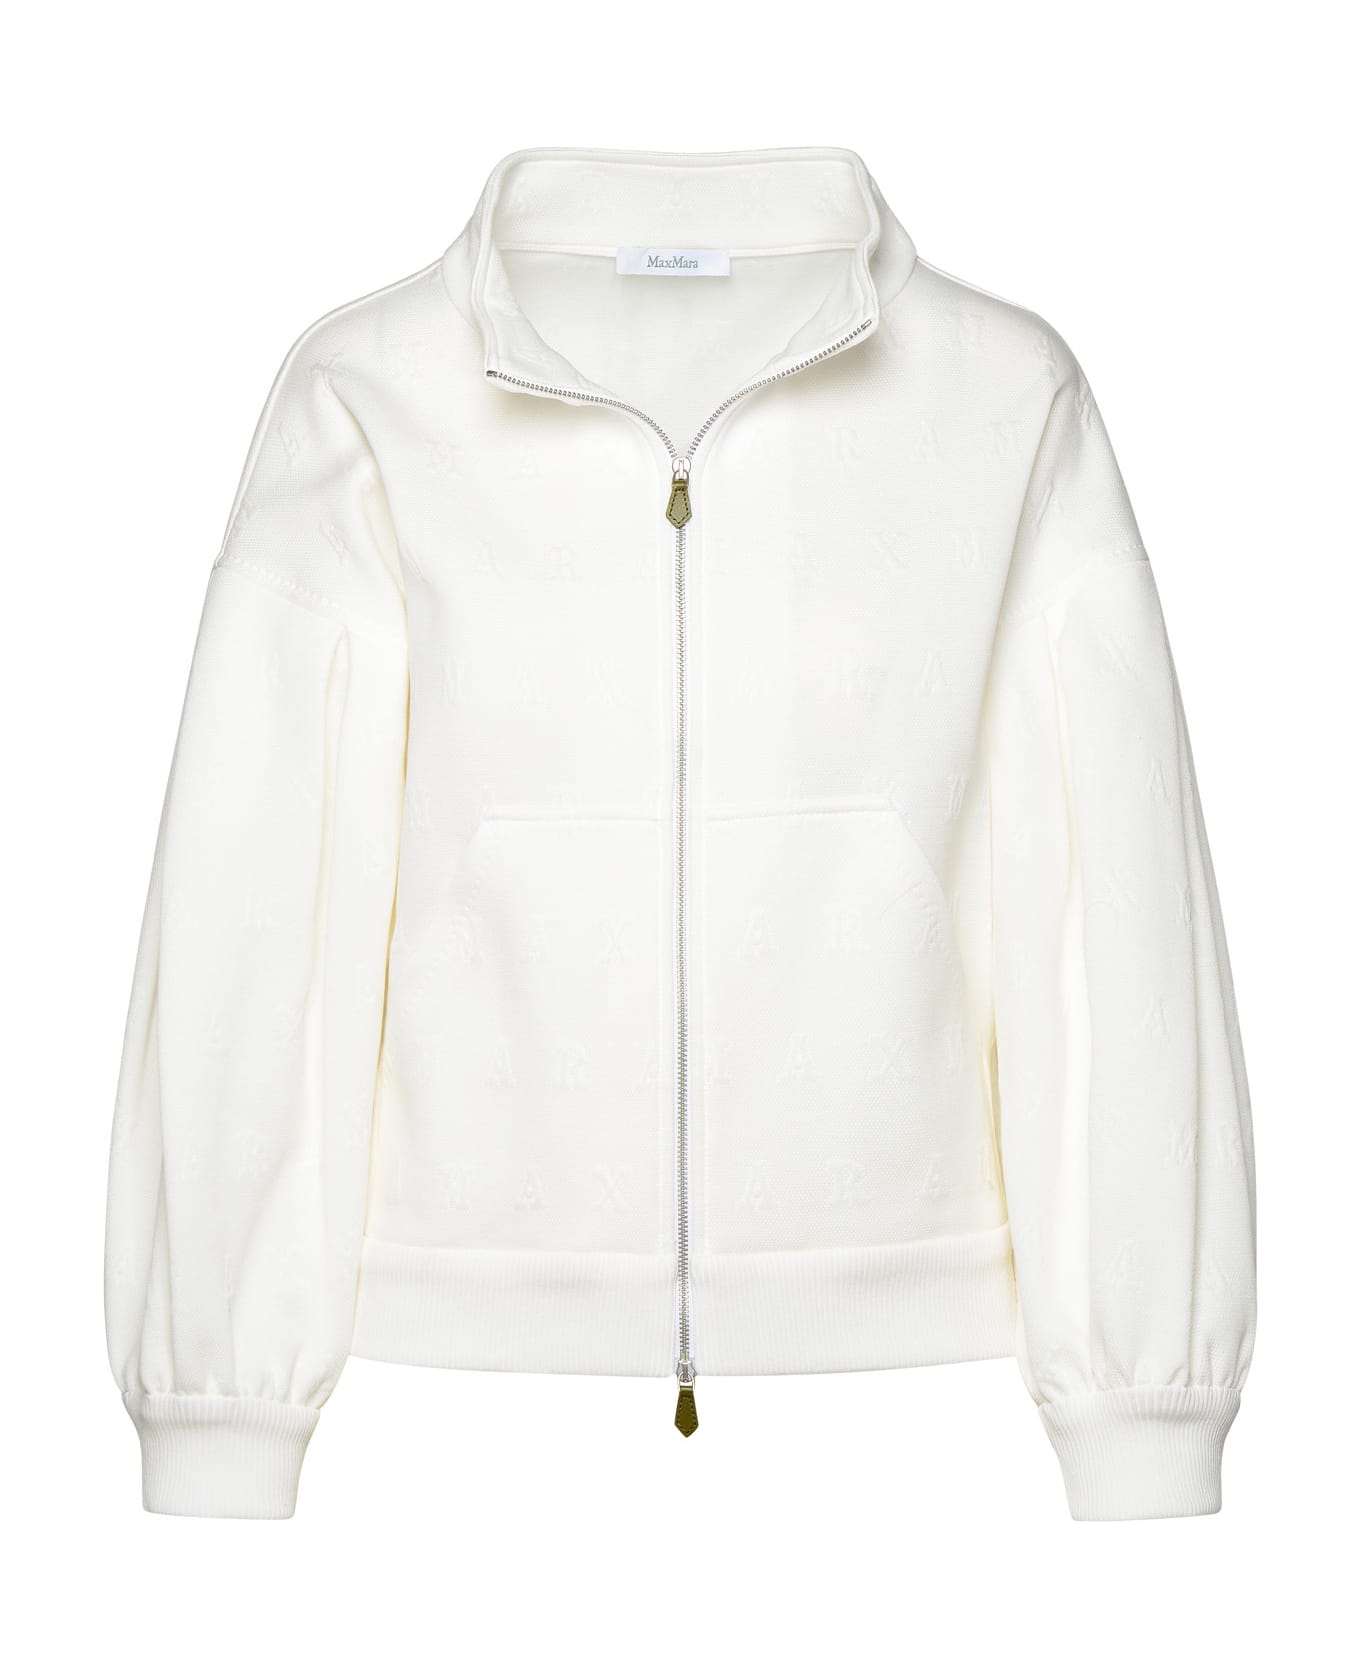 Max Mara 'gastone' White Cotton Blend Crop Jacket - White